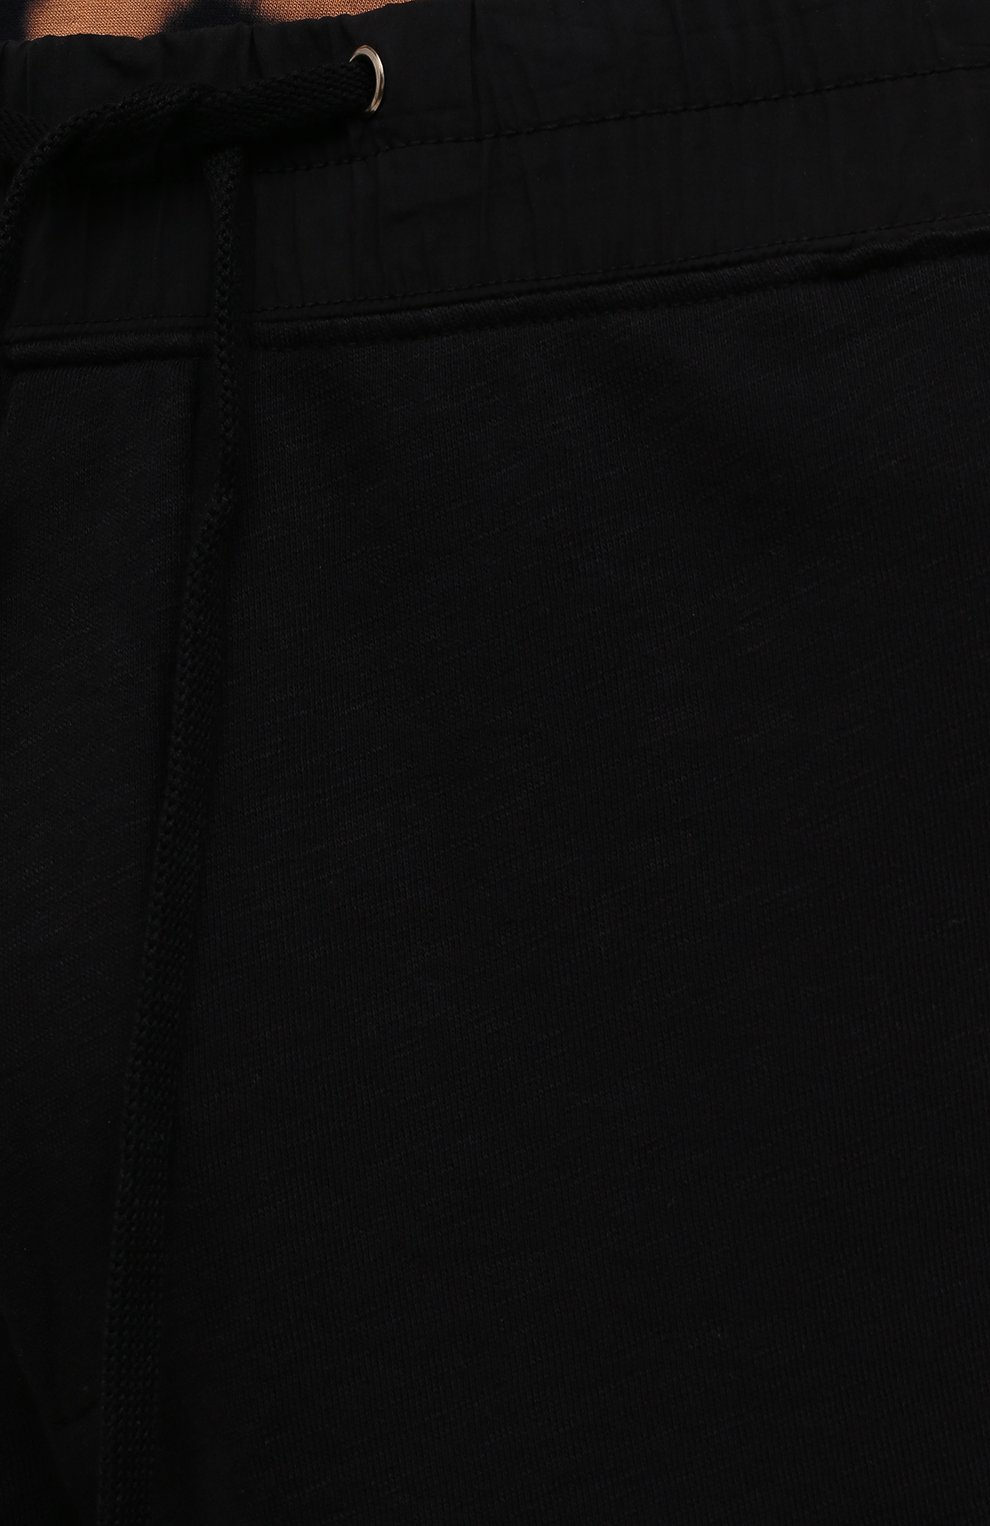 Мужские хлопковые шорты JAMES PERSE черного цвета, арт. MXA4238 | Фото 5 (Длина Шорты М: До колена; Случай: Повседневный; Материал внешний: Хлопок; Стили: Спорт-шик)